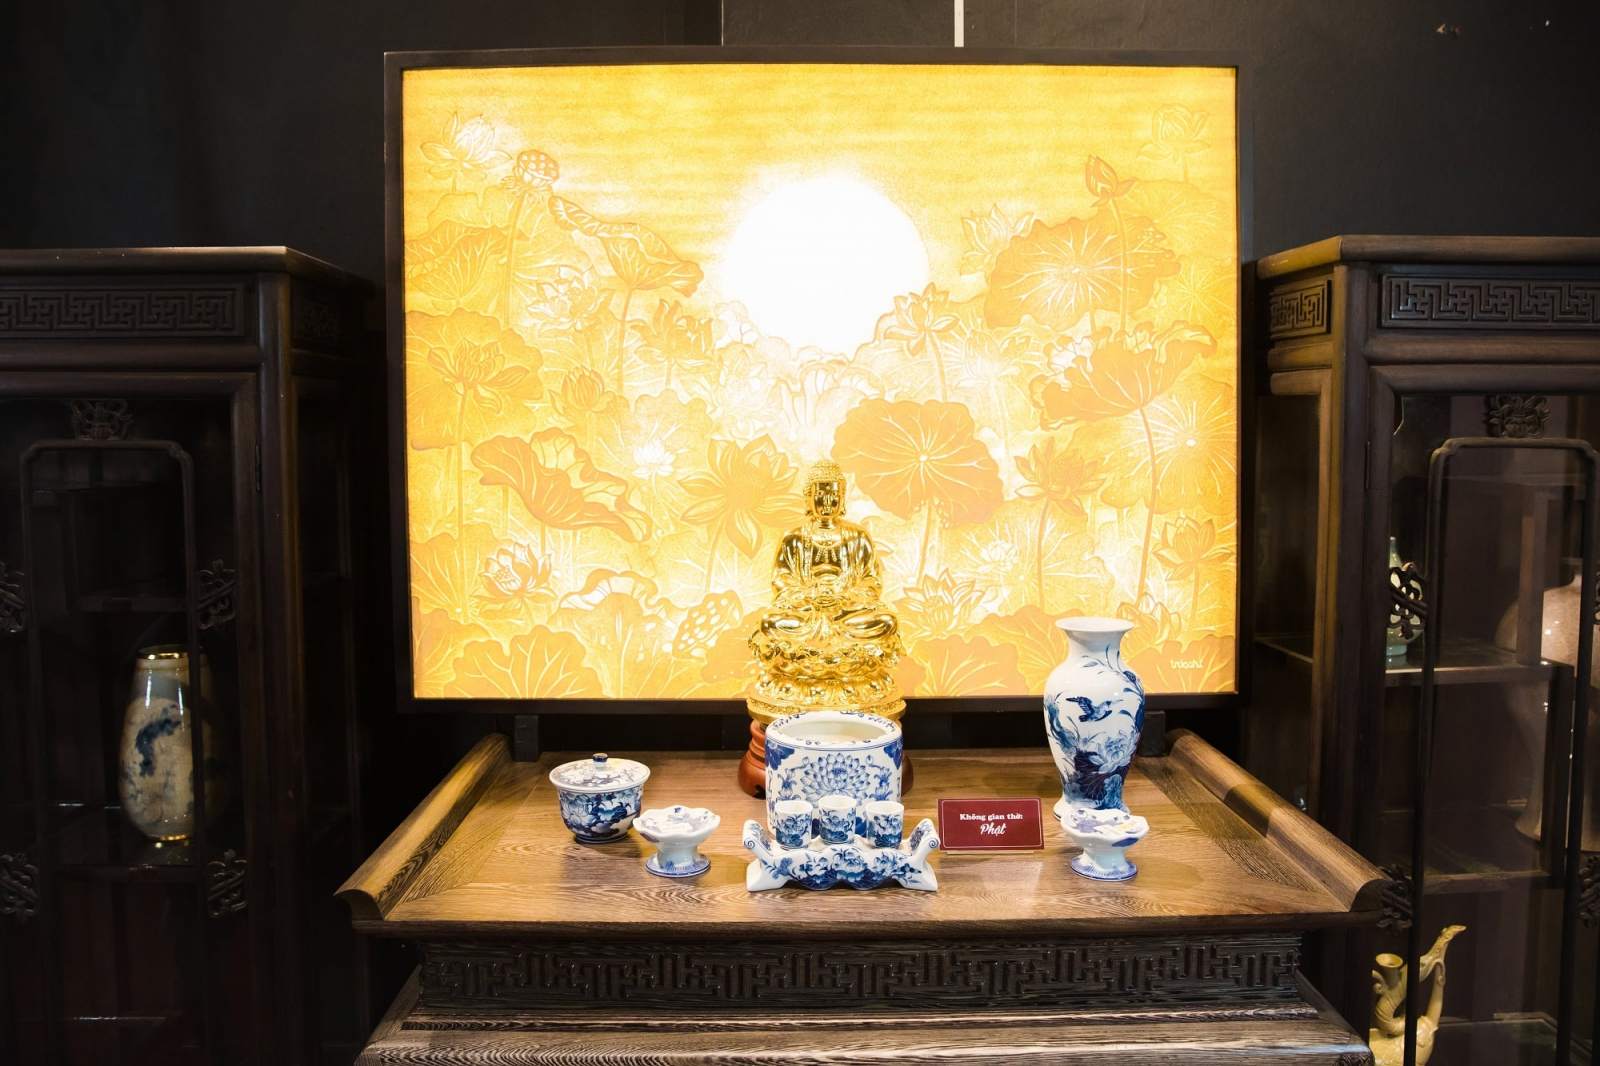 Bình hoa bàn thờ Phật - Bầu hoa tươi trên bàn thờ Phật sẽ mang đến một không gian tươi mới, thanh tịnh và bình yên cho ngôi nhà bạn. Cùng khám phá những mẫu Bình hoa bàn thờ Phật đẹp nhất năm 2024 giúp tăng cường năng lượng tích cực cho căn nhà và gia đình bạn.